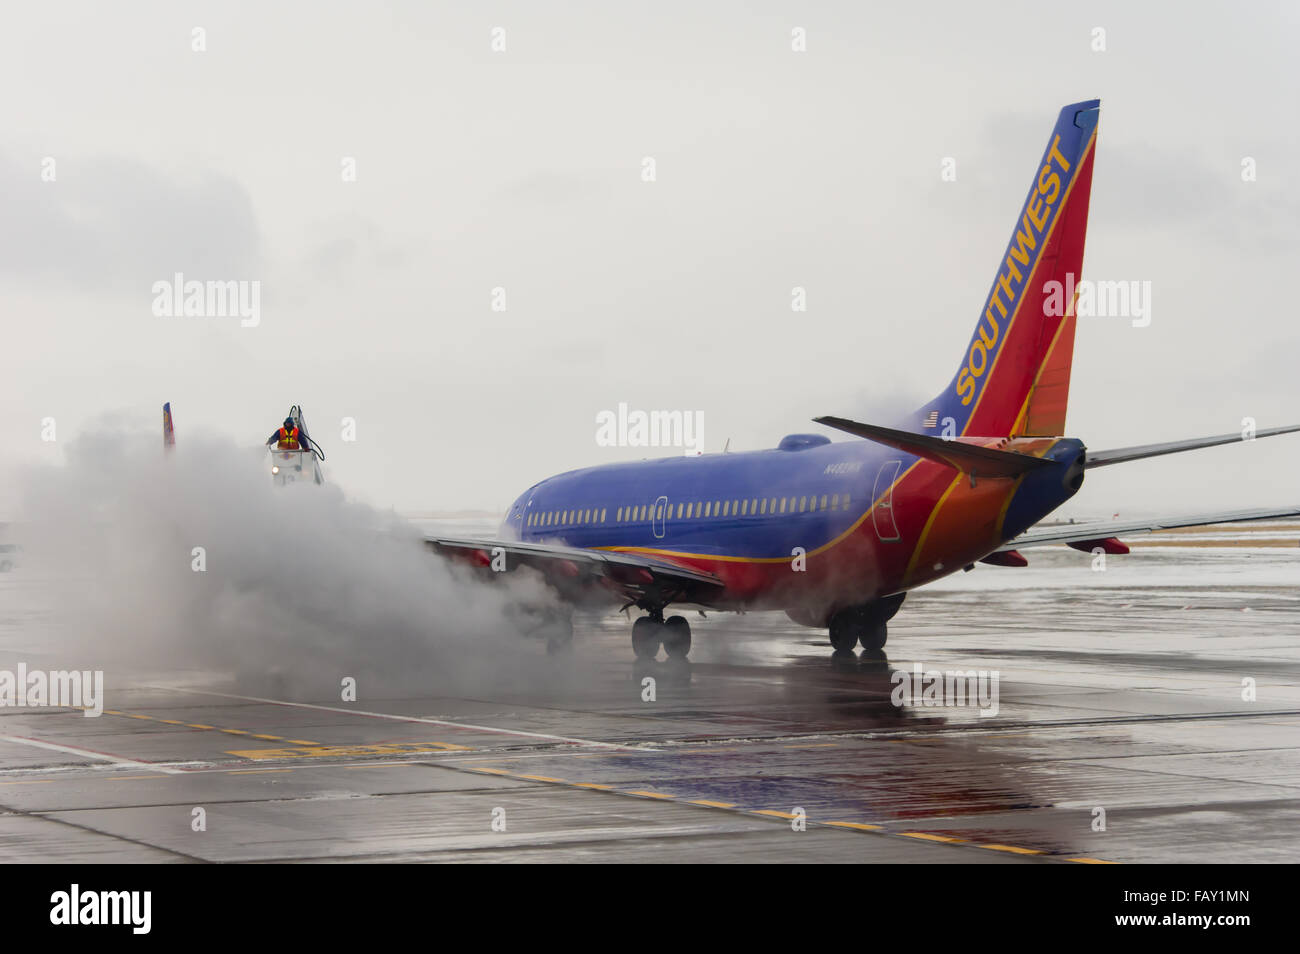 De-icing crews spray chemical on a Southwest Airlines aircraft at Denver International Airport, Denver, Colorado, USA Stock Photo